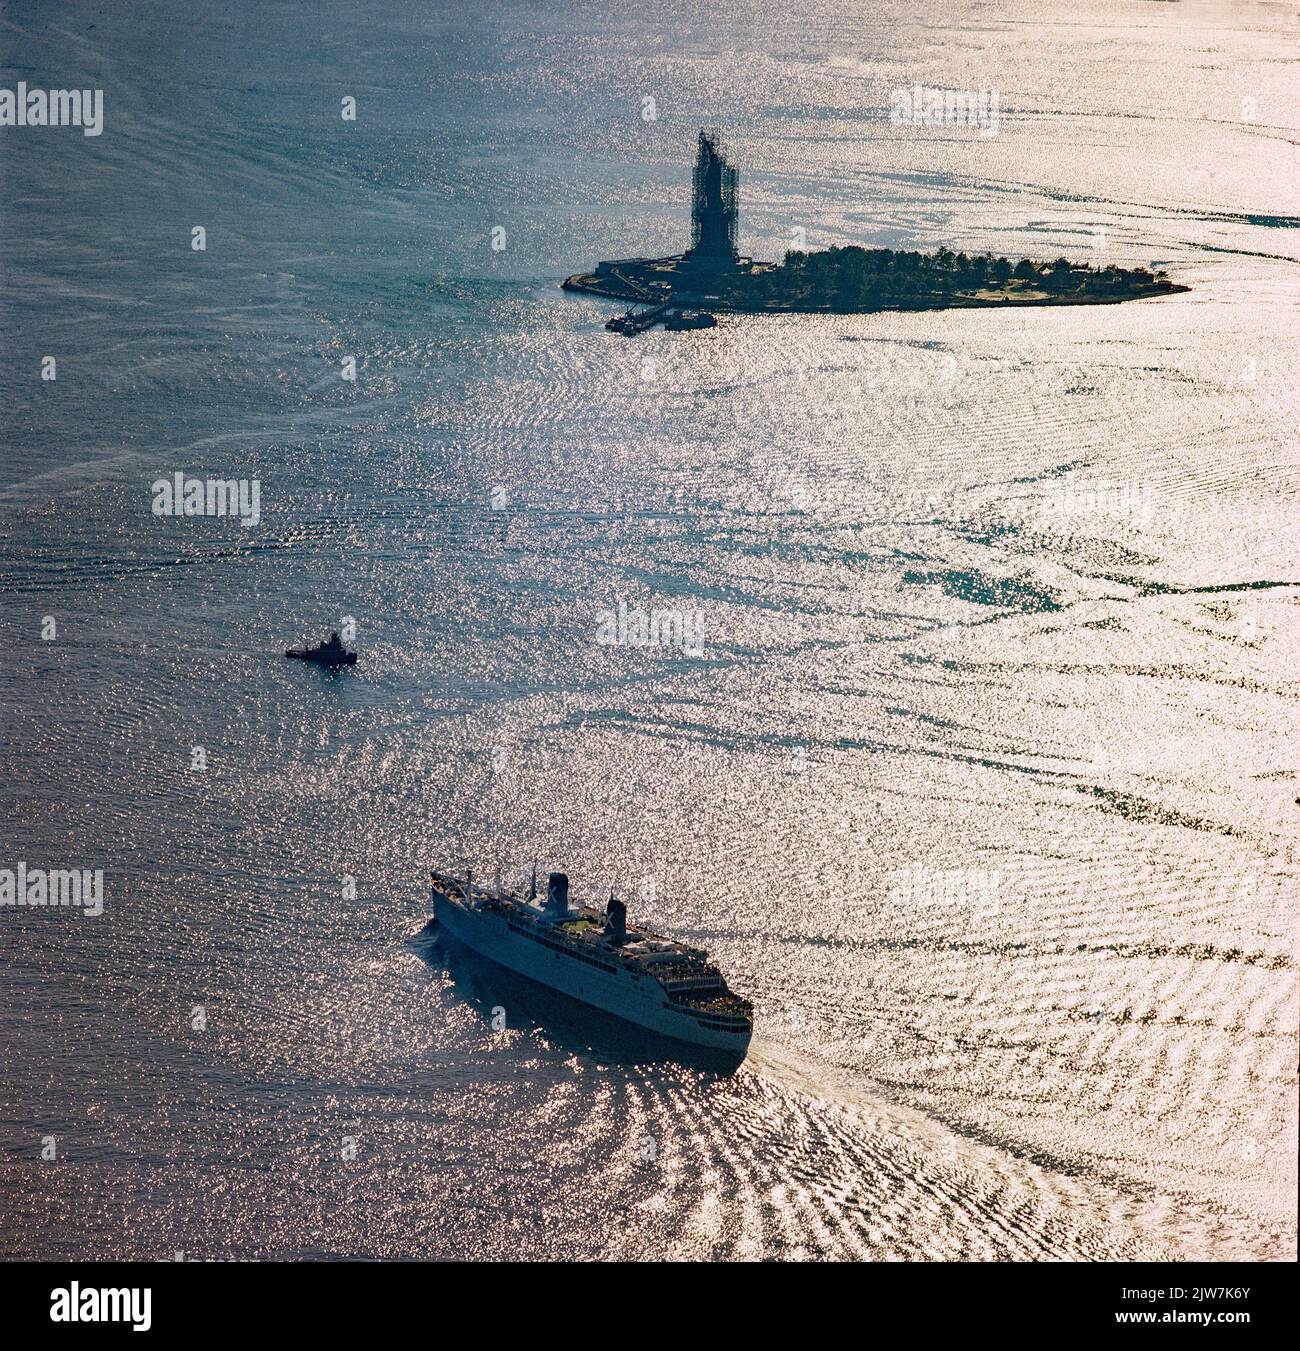 New York, 1980er, Britanis-Schiff, Liberty Island in der Ferne, Freiheitsstatue mit Renovierungsgerüsten, Lichtreflexionen auf dem Wasser, obere New Yorker Bucht, Luft, New York City, NYC, NY, USA, Stockfoto